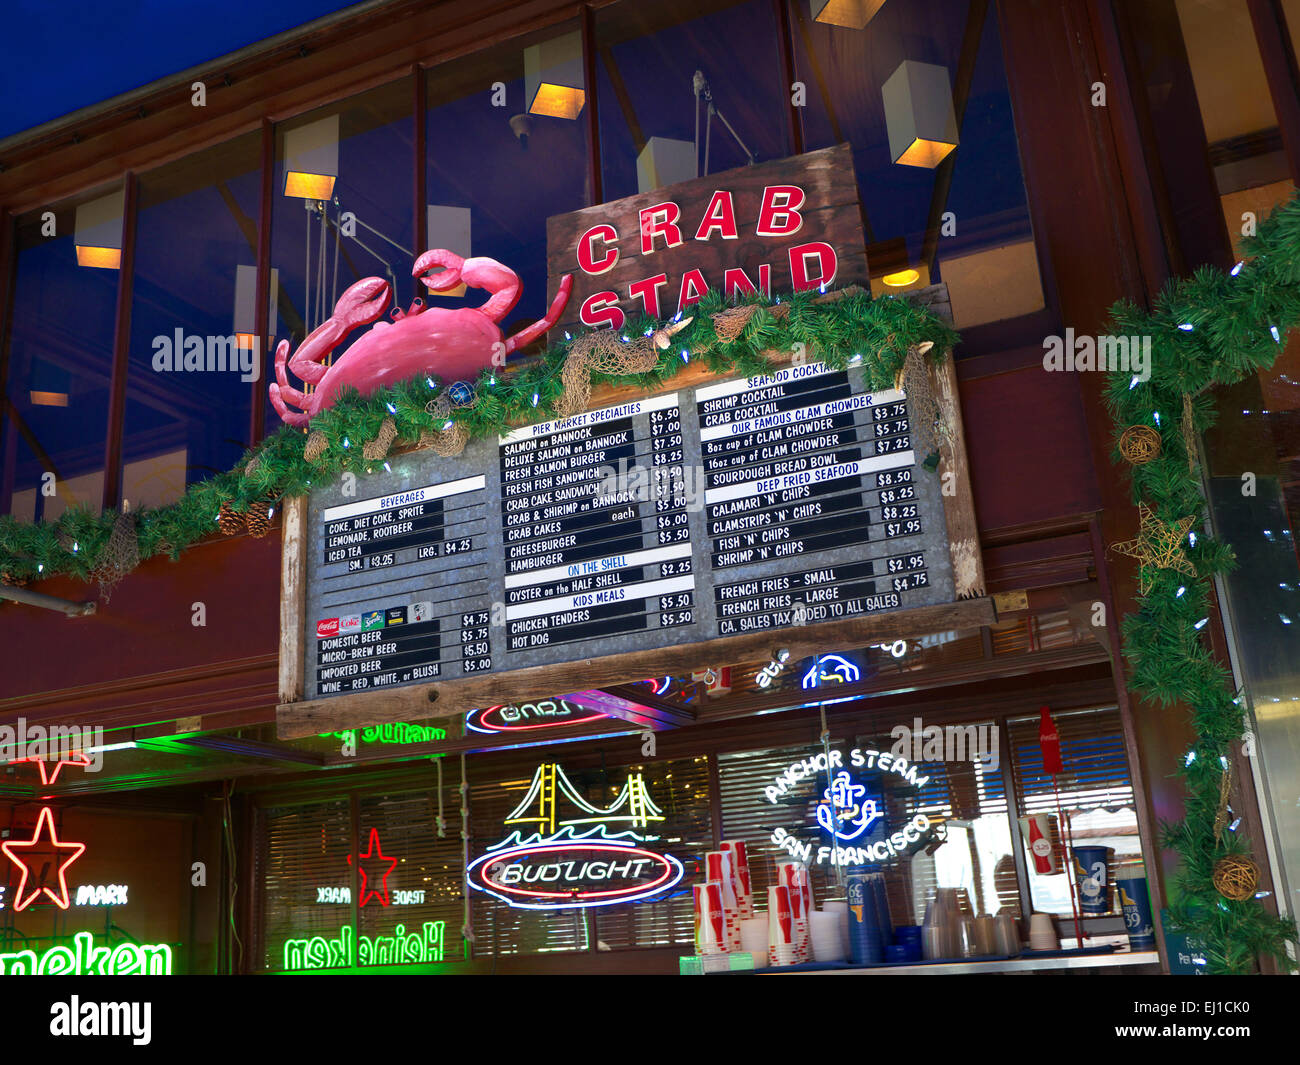 Crab Stand Renowned fish and crab fast food eatery menu at Fisherman's Wharf San Francisco California USA Stock Photo